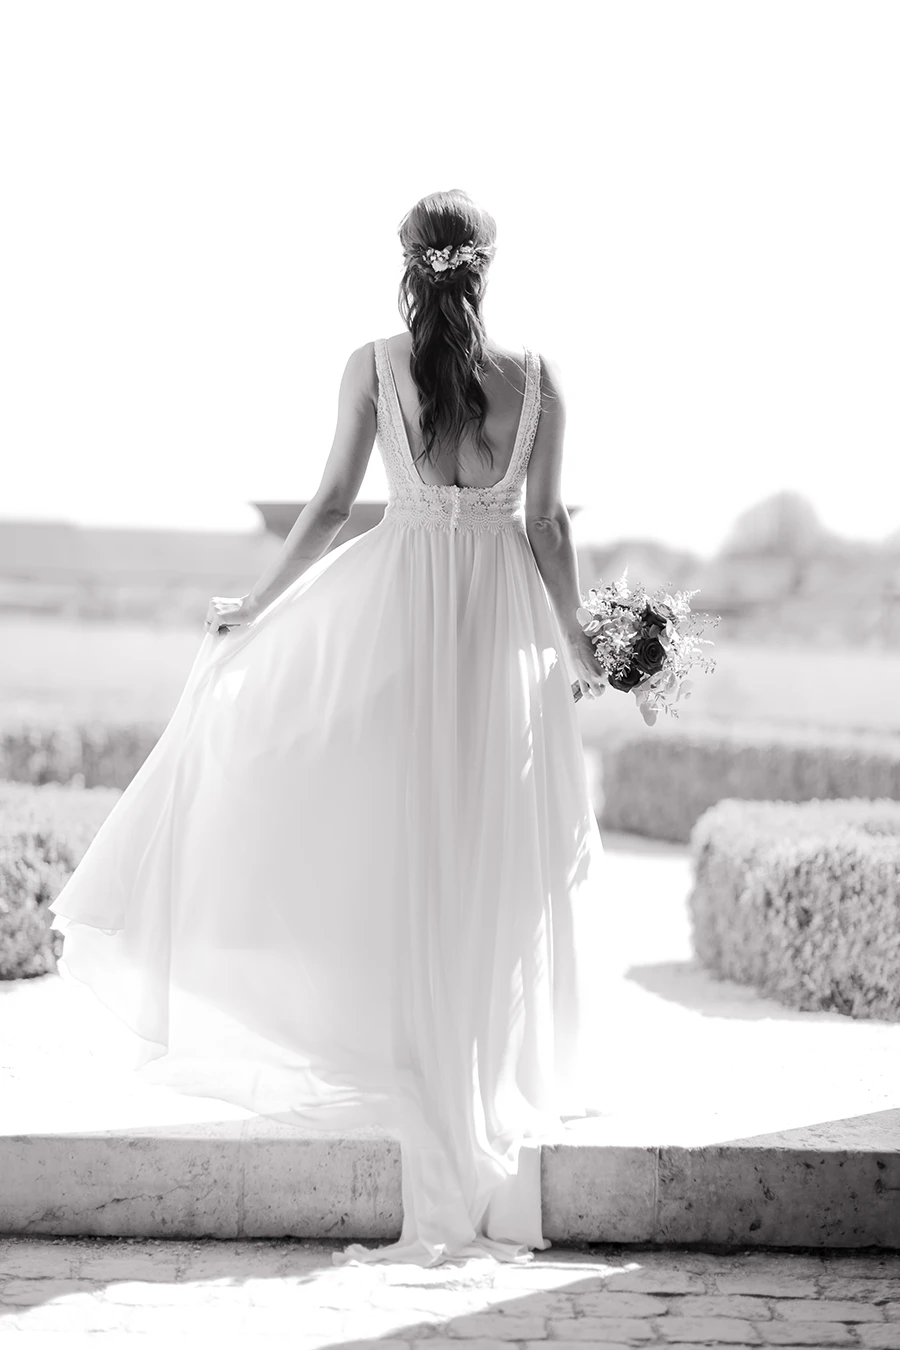 Schwarz-weiß Aufnahme der Braut von hinten, das Brautkleid fliegt im Wind.